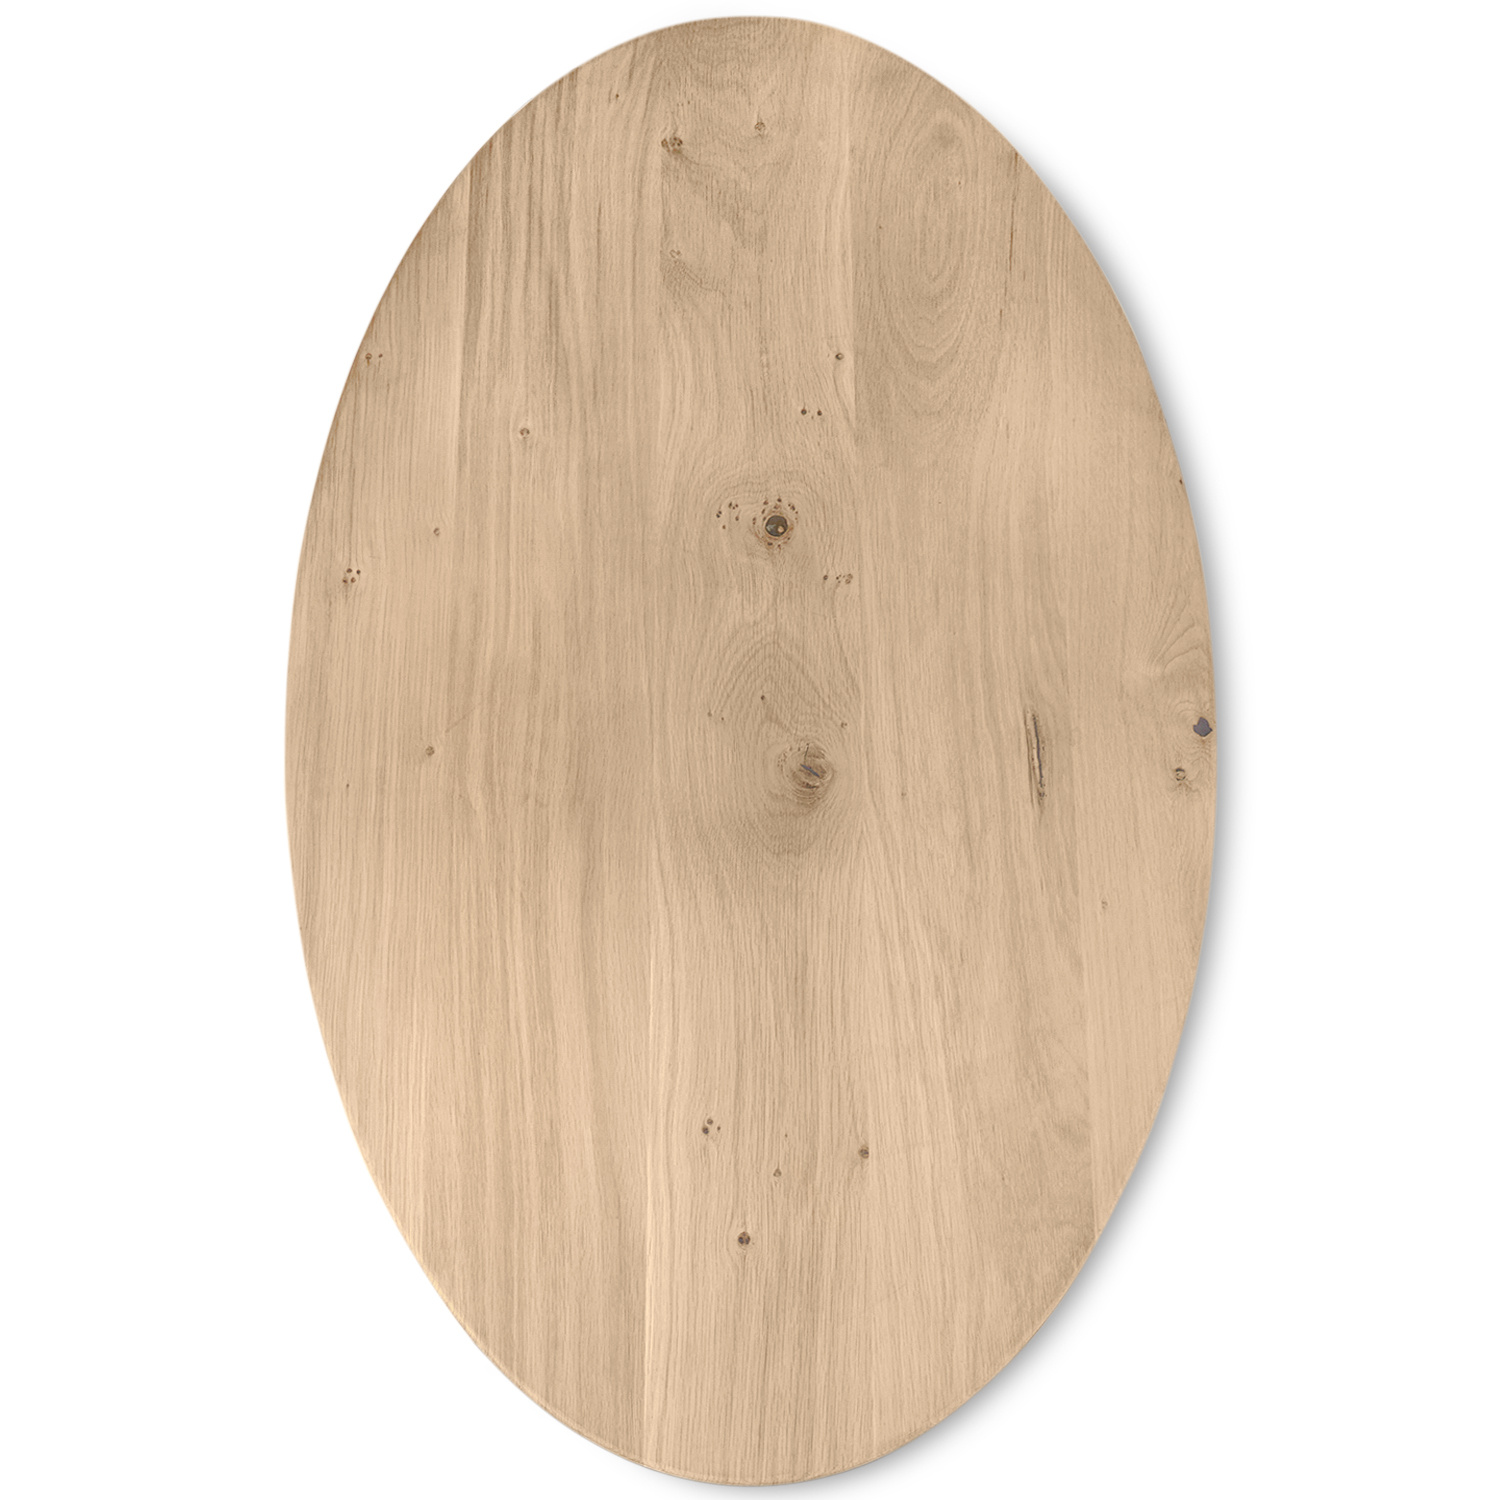  Ovaal eiken tafelblad op maat - 3 cm dik (1-laag) - rustiek Europees eikenhout - met brede lamellen (circa 14-20 cm)nhout - verlijmd kd 8-12% - 40-117x80-247 cm